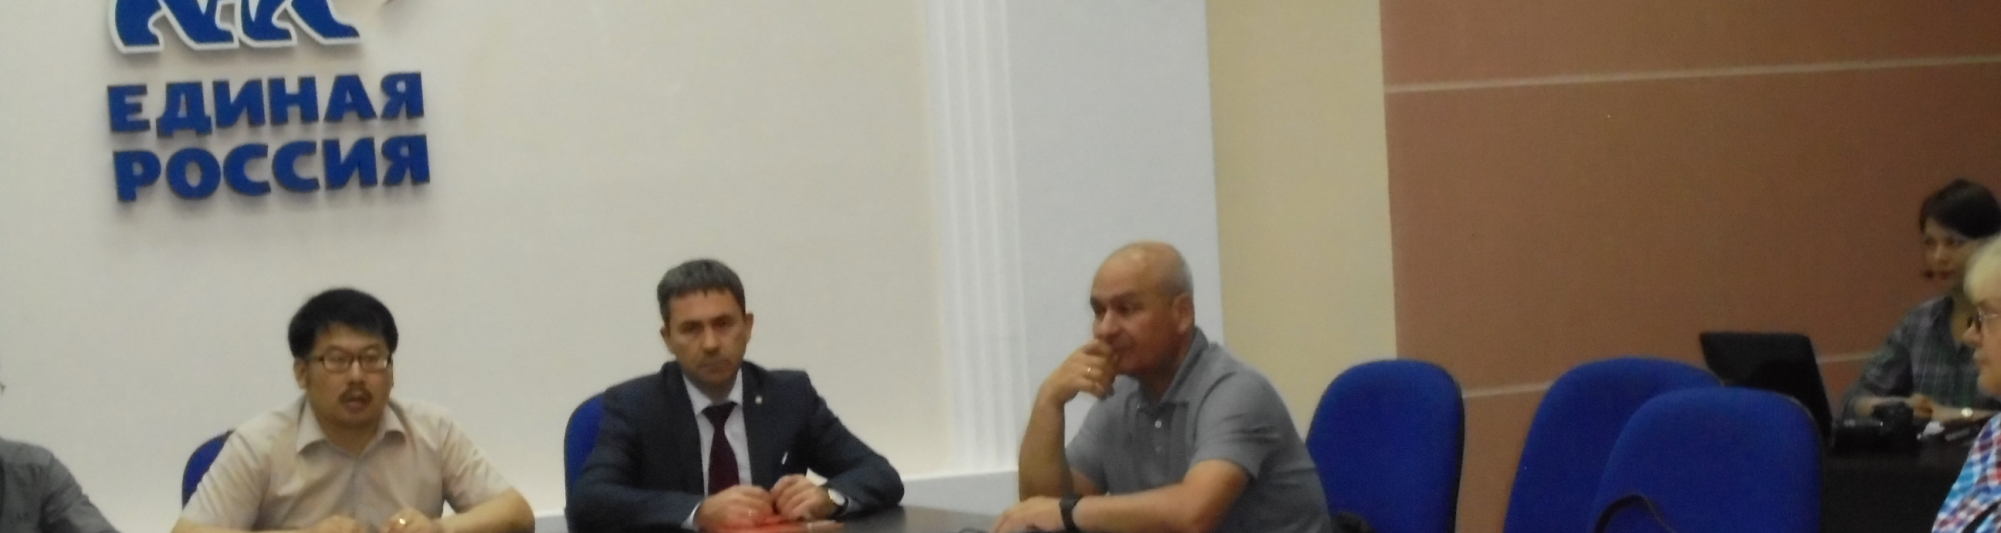  Игорь Морозов принял участие в заседании общественного совета проекта «Управдом»